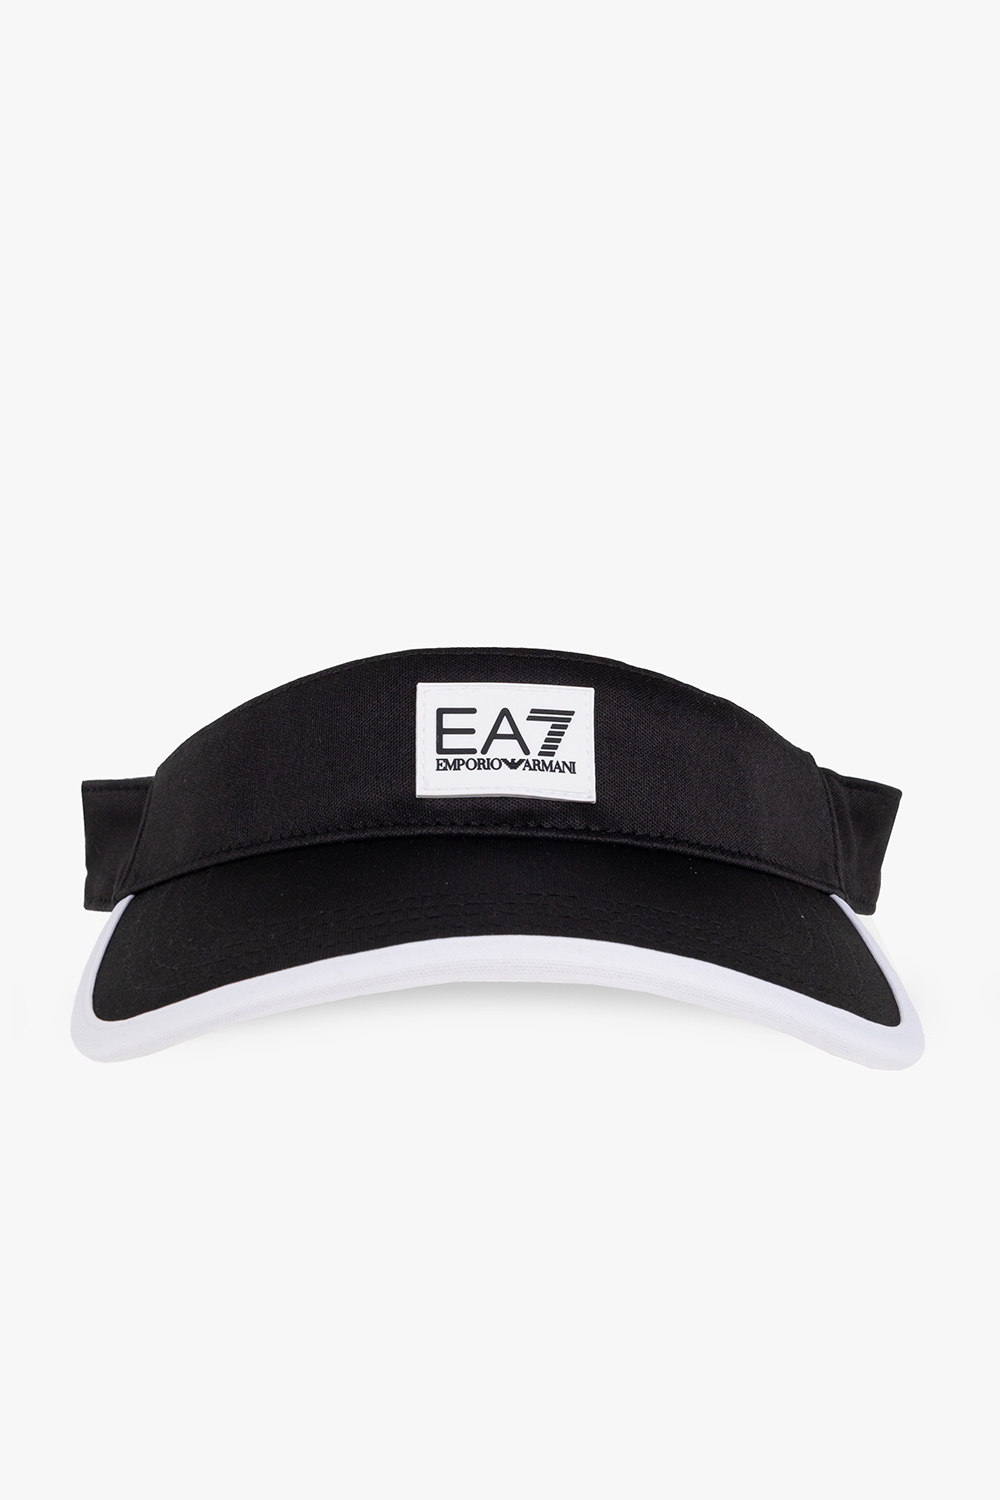 EA7 Emporio Armani Patched visor